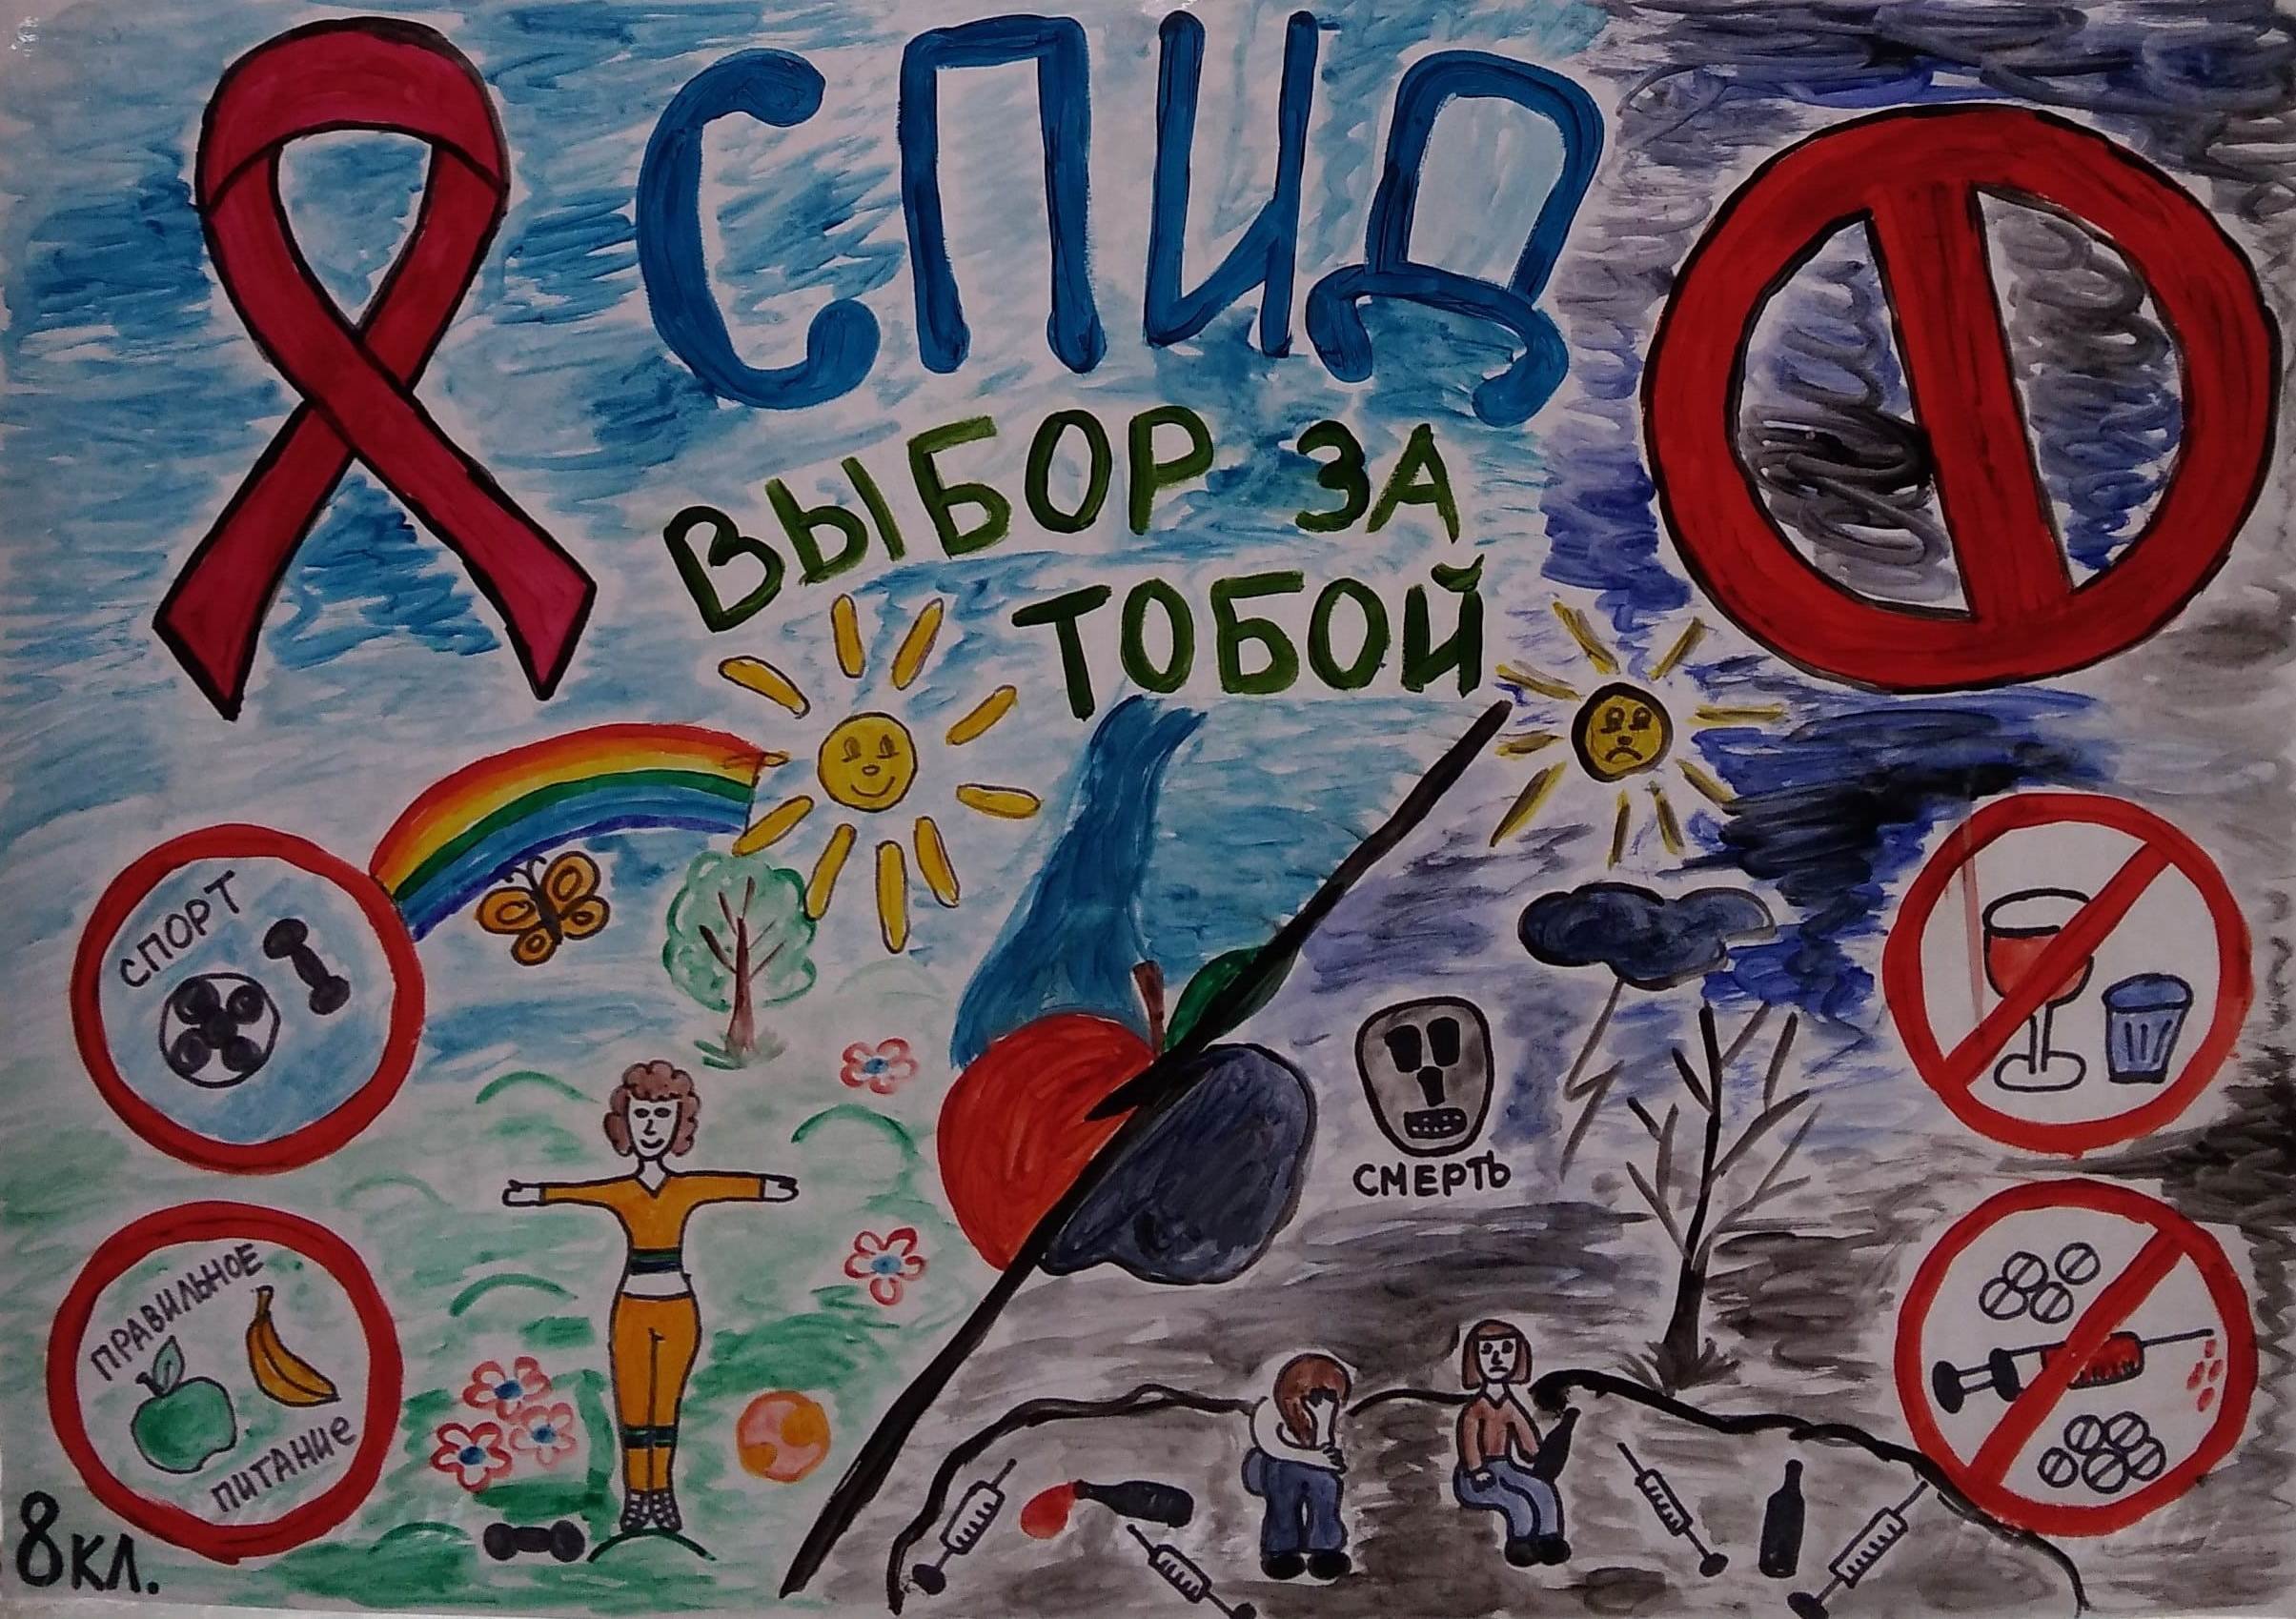 Плакат борьба со СПИДОМ